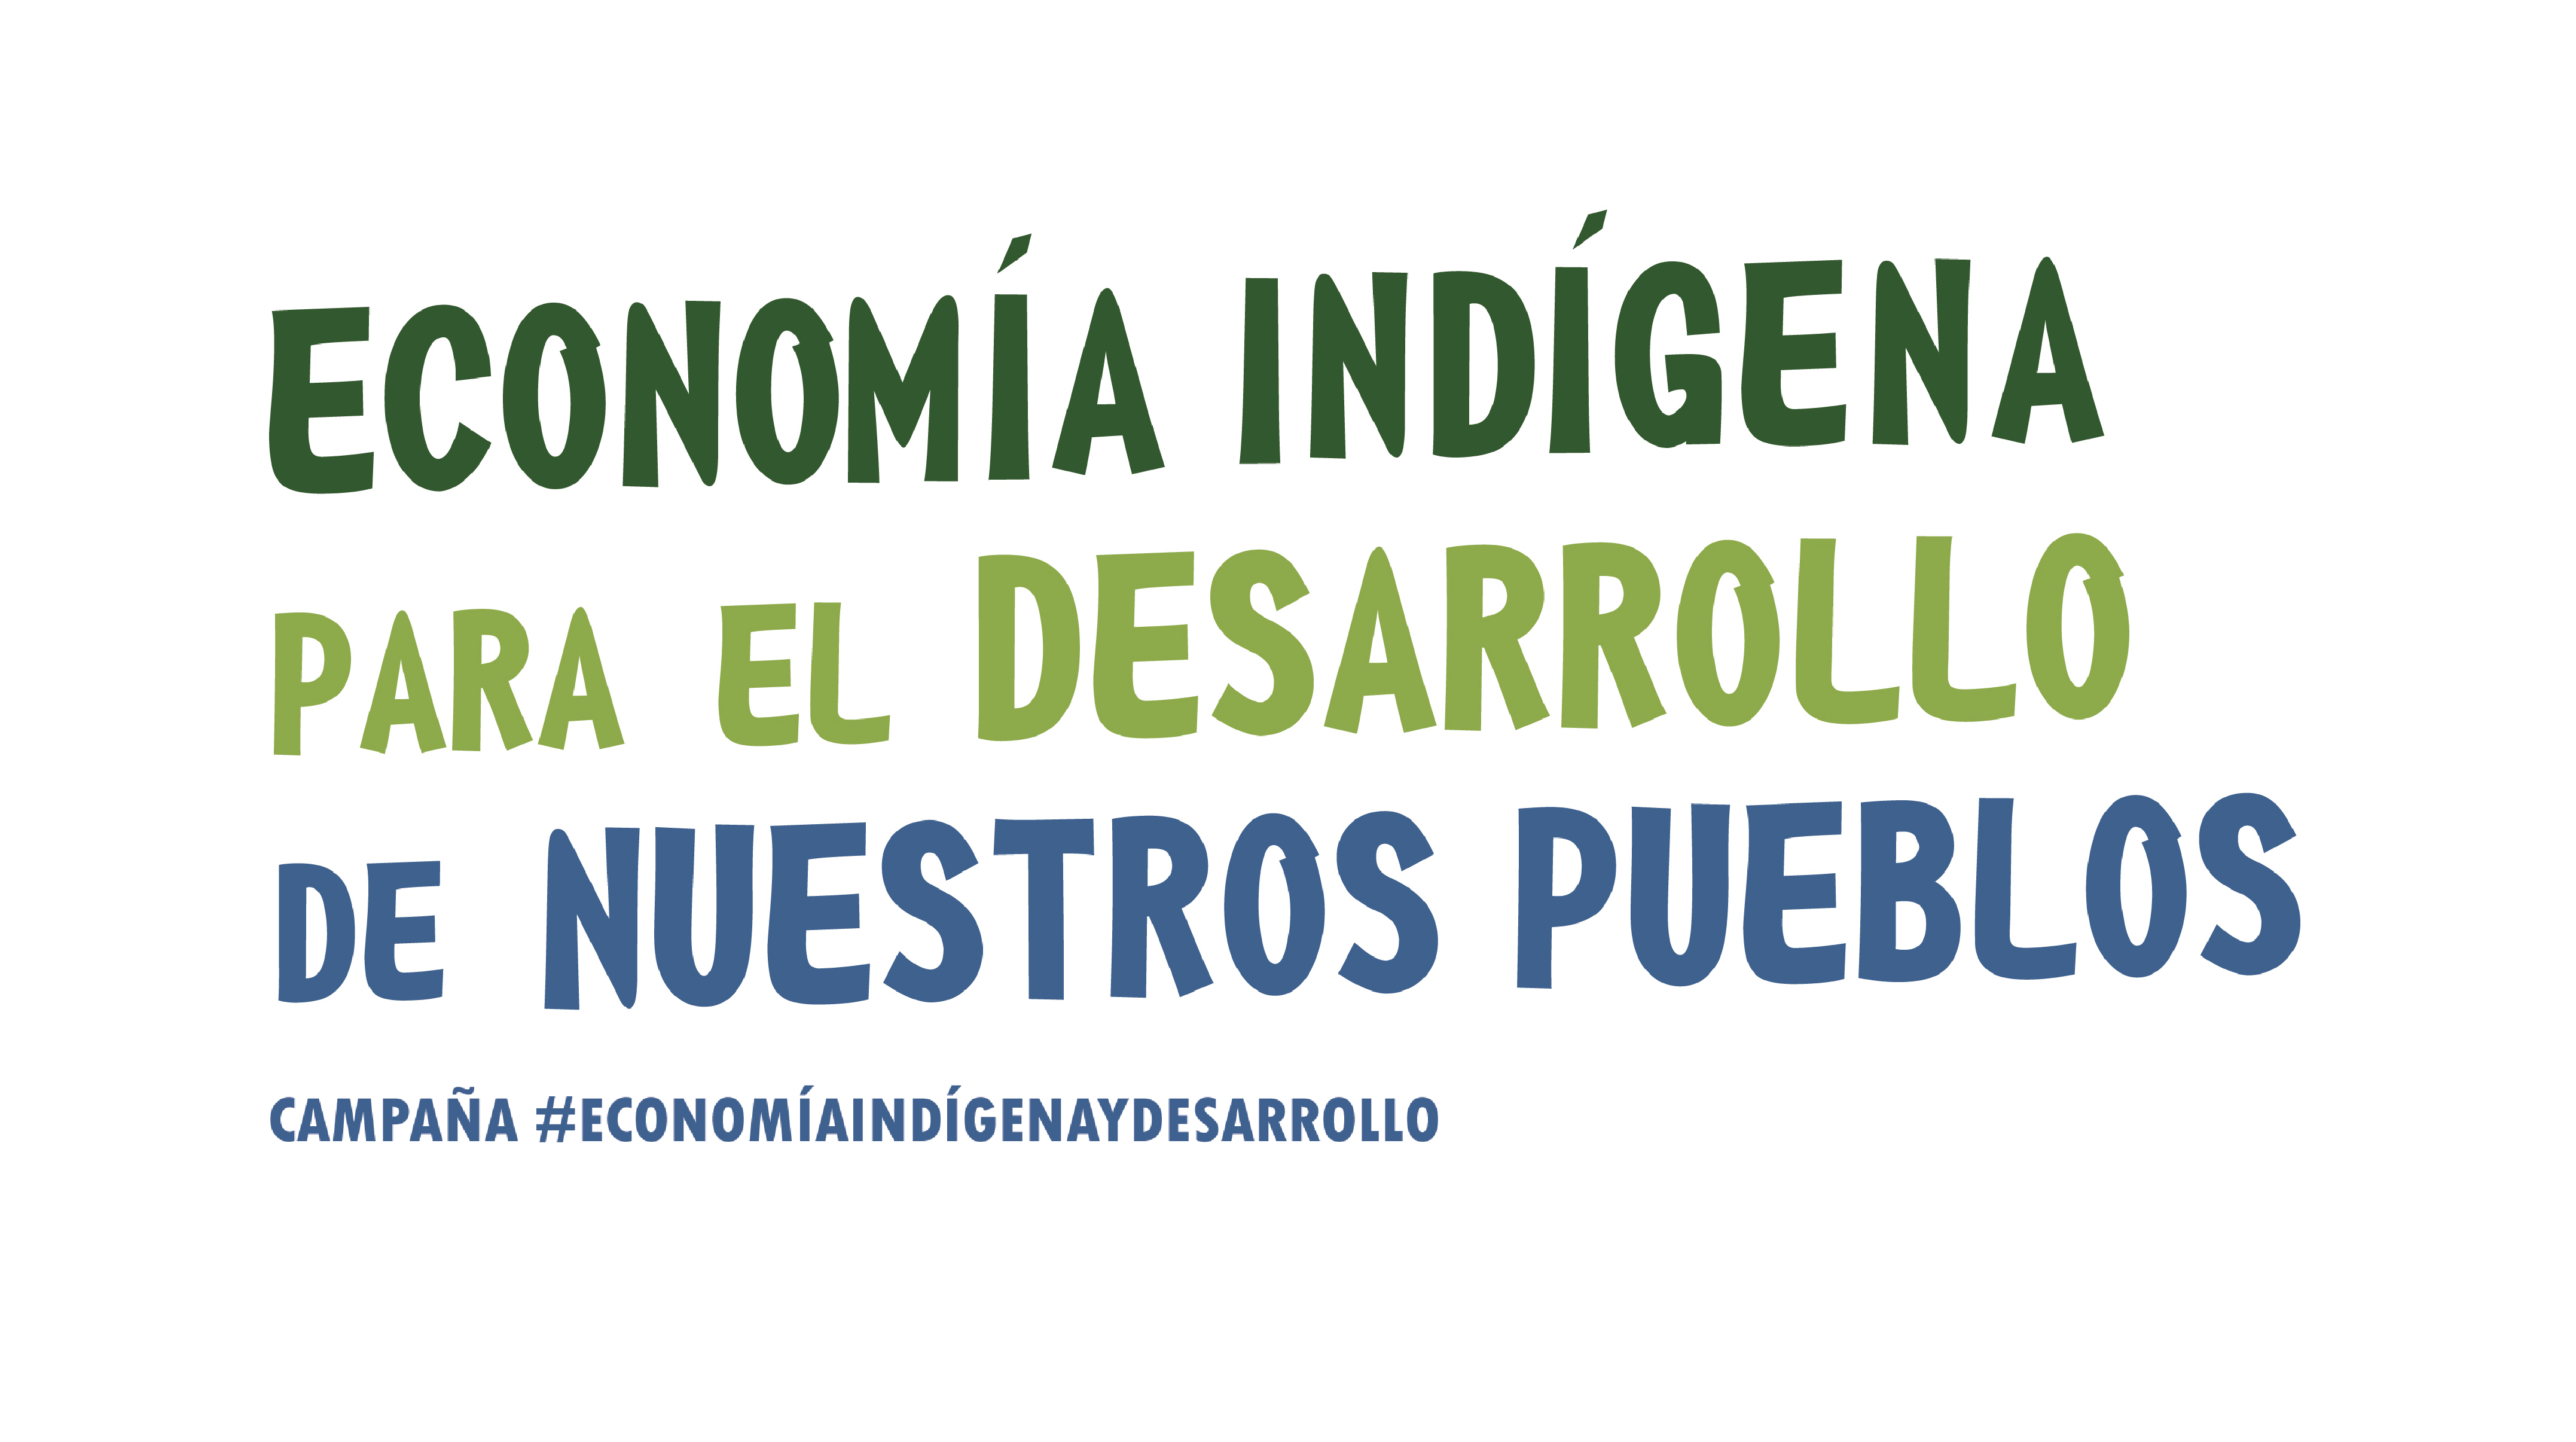 Economia Indigena Para El Desarrollo De Nuestros Pueblos